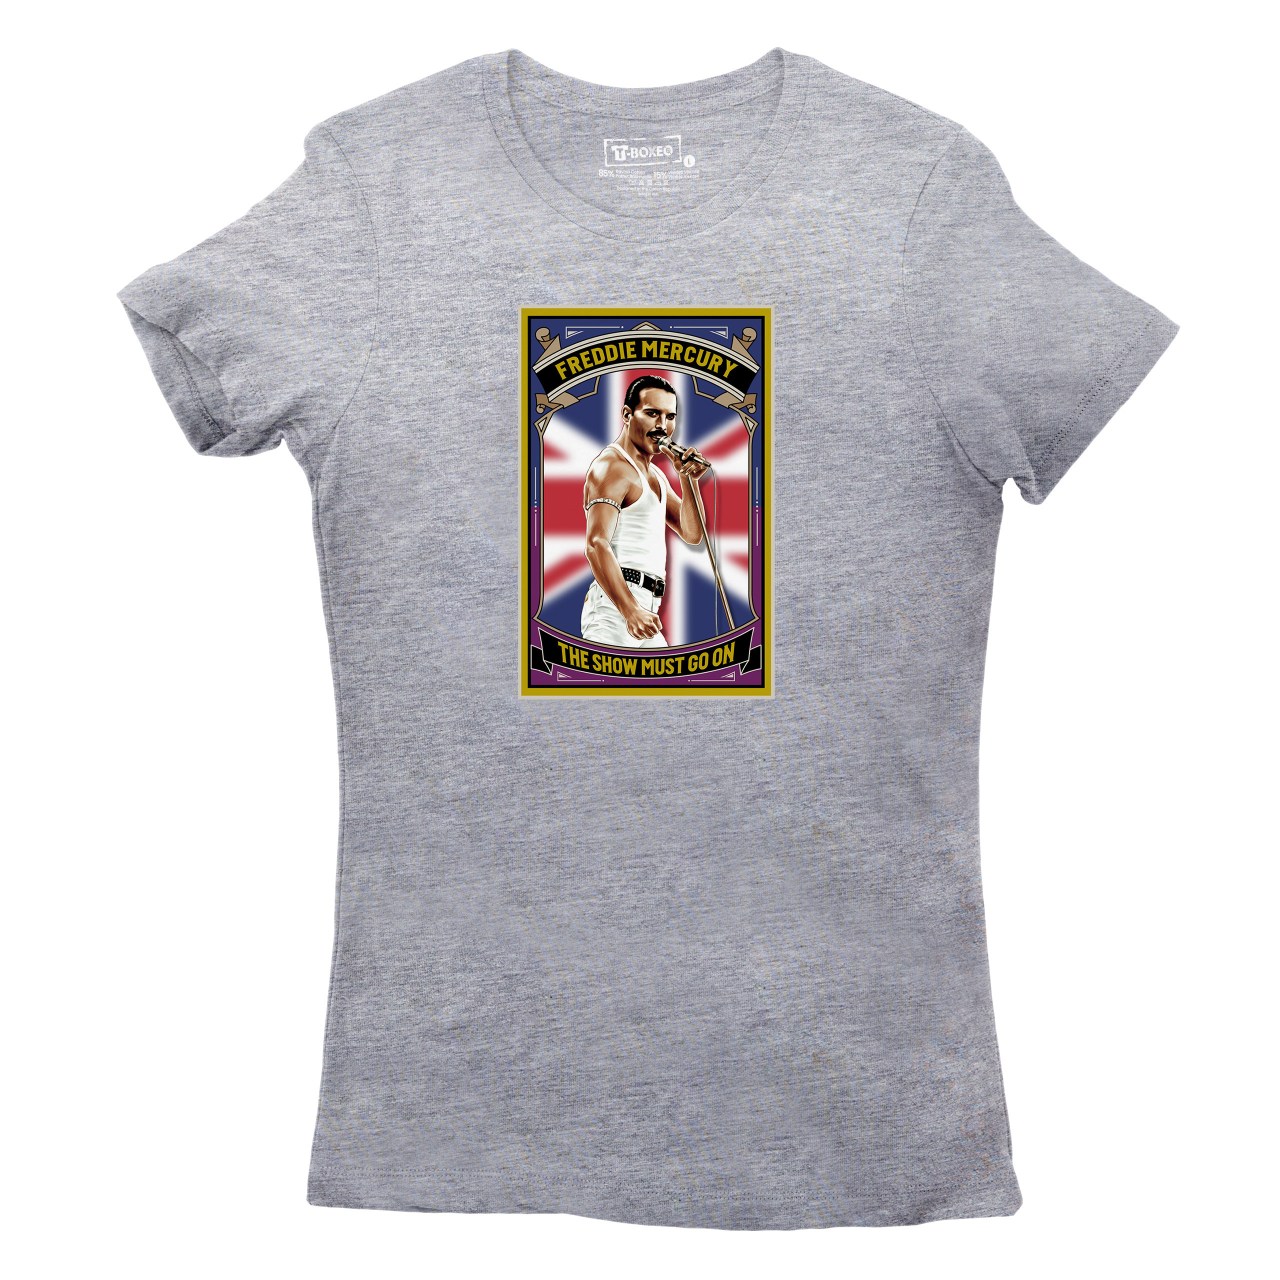 Dámské tričko s potiskem “Freddie Mercury”